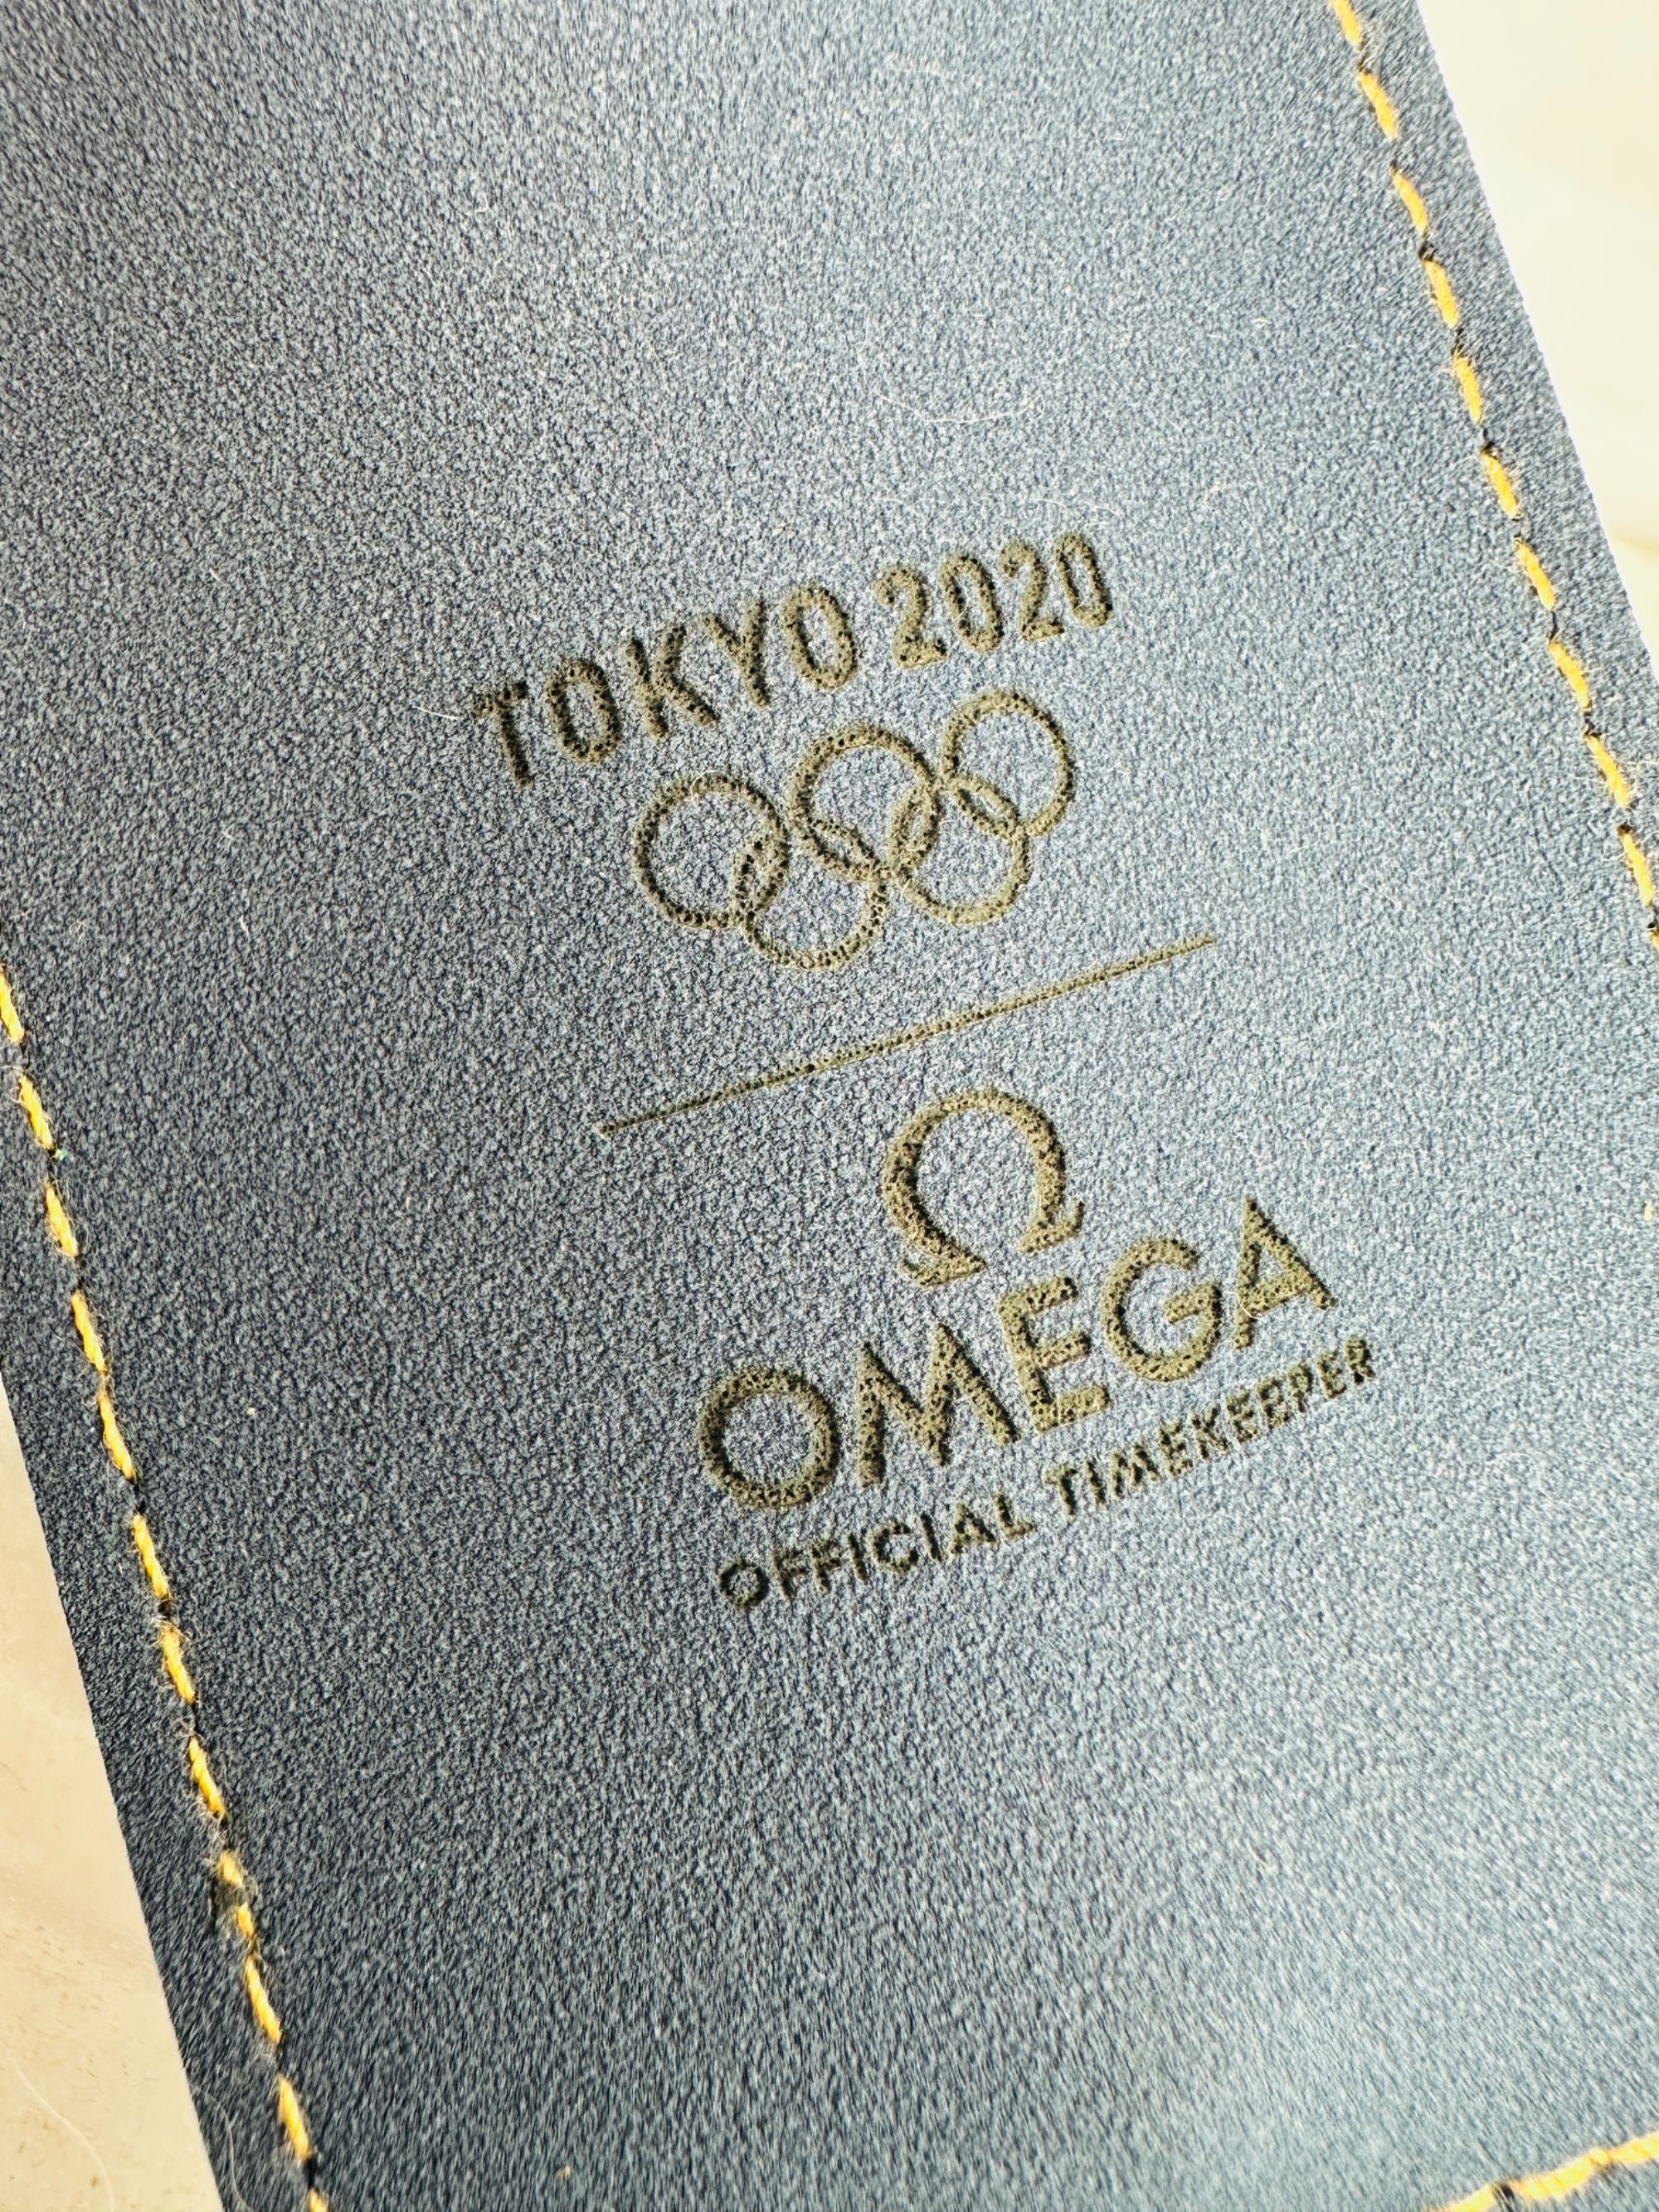 Caneta omega souvenir - jogos olimpicos - mont blanc